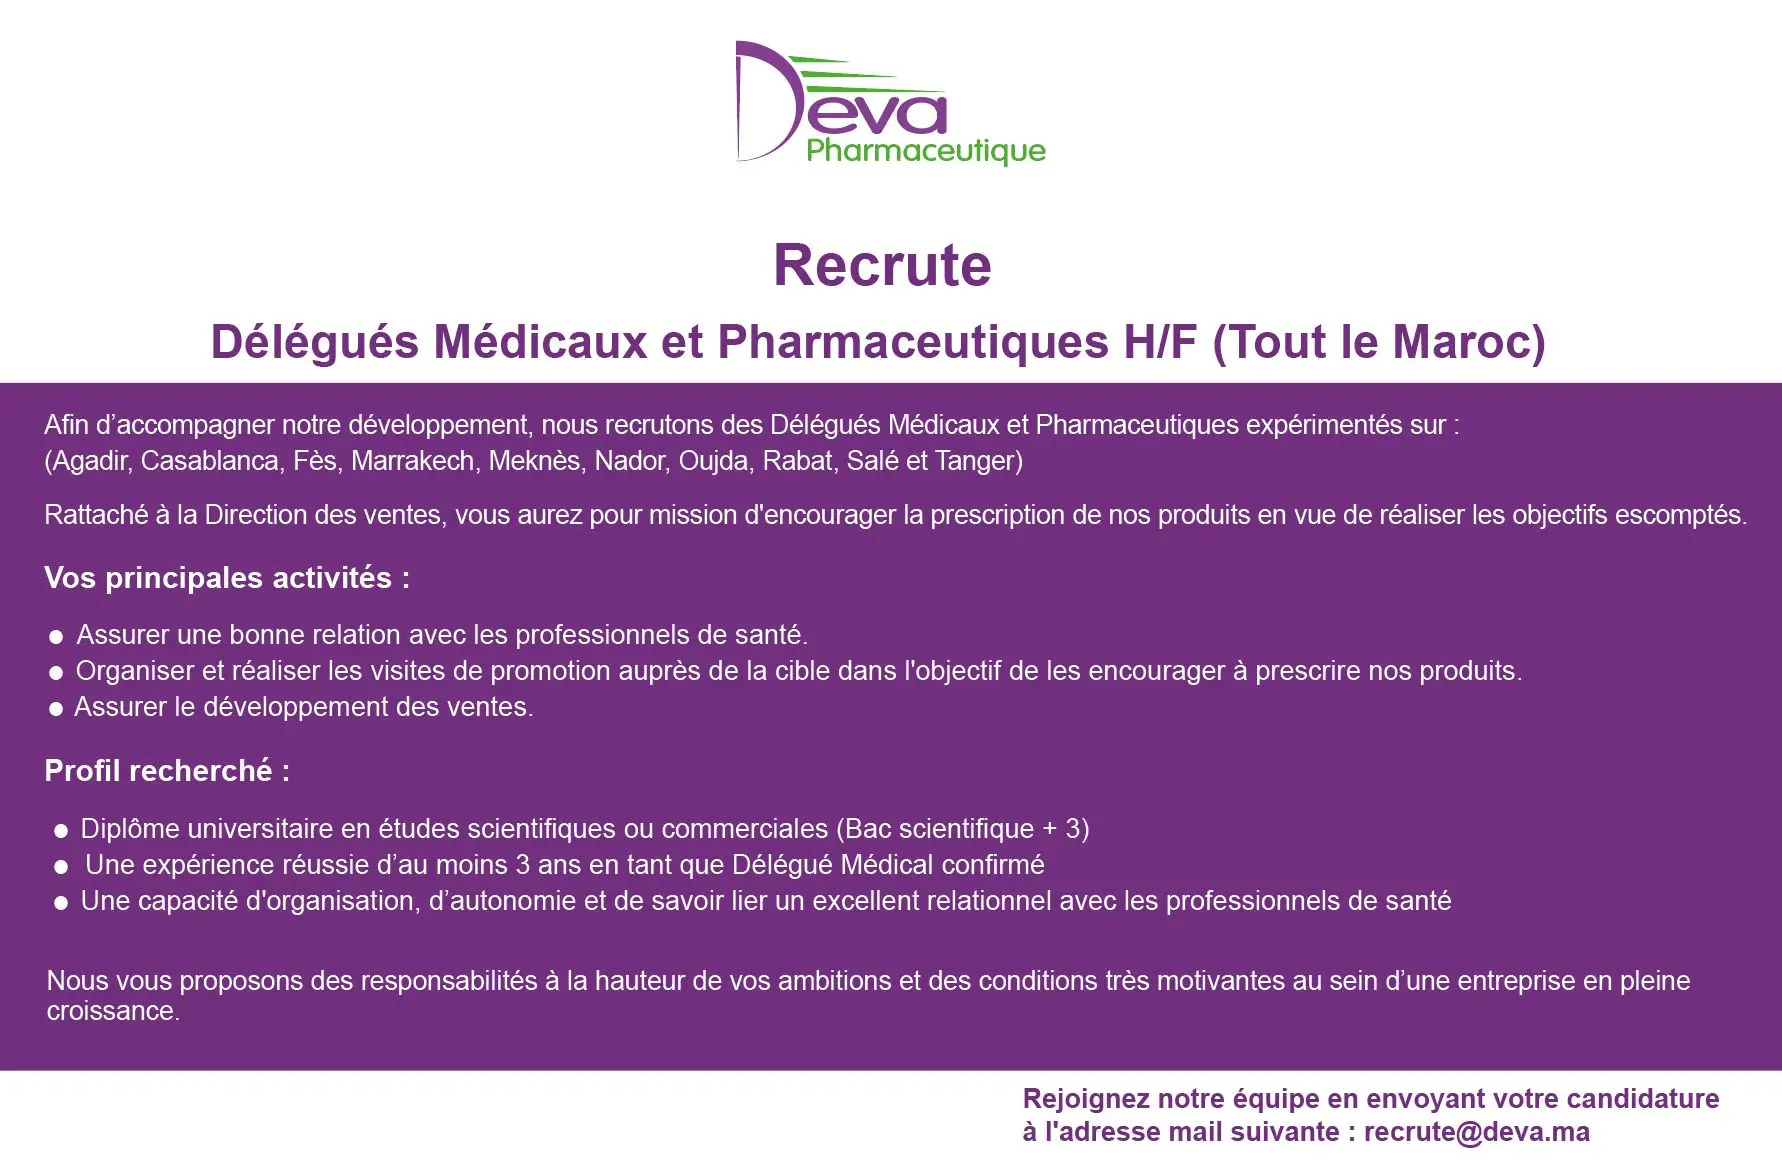 Deva Pharmaceutique recrute Délégués Médicaux et Pharmaceutiques